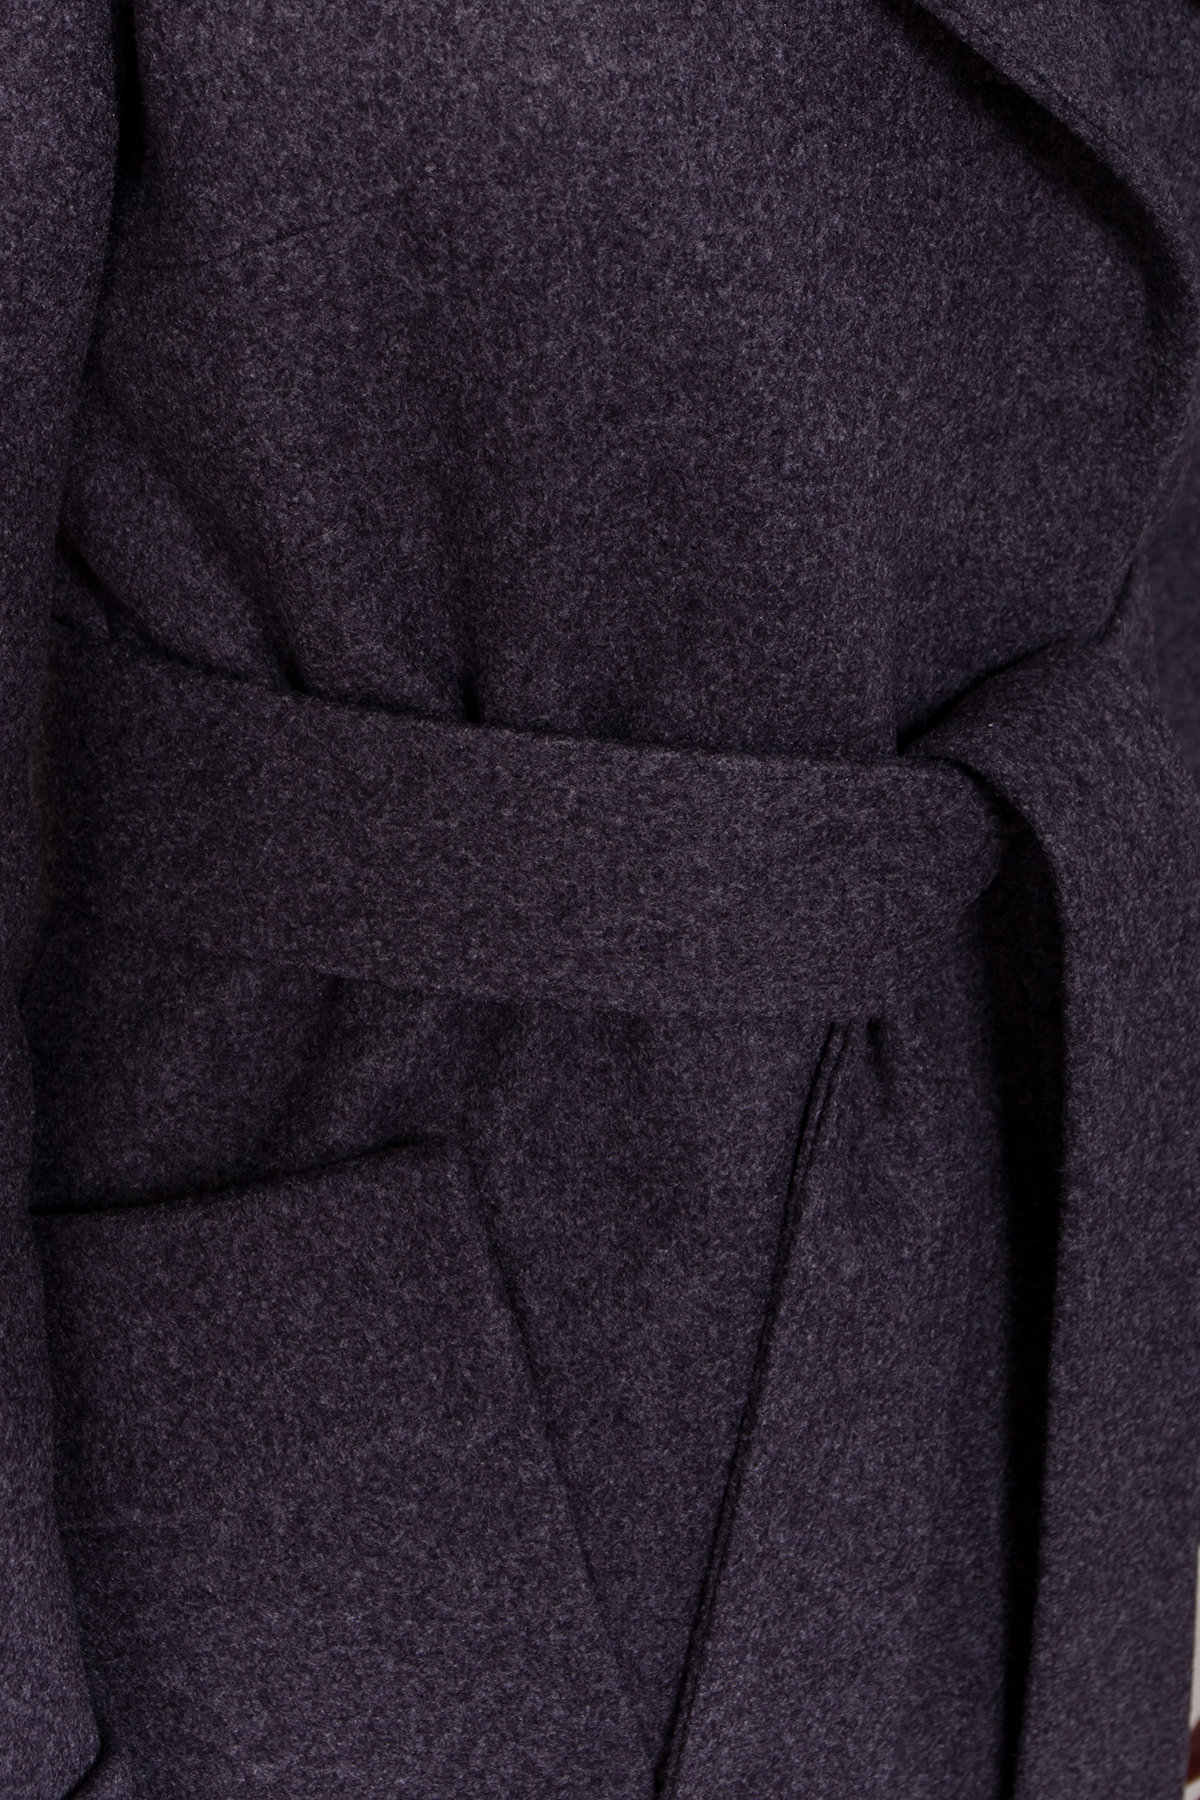 Женское пальто зима с накладными карманами Анджи 8301 АРТ. 44427 Цвет: т. синий 543 - фото 6, интернет магазин tm-modus.ru